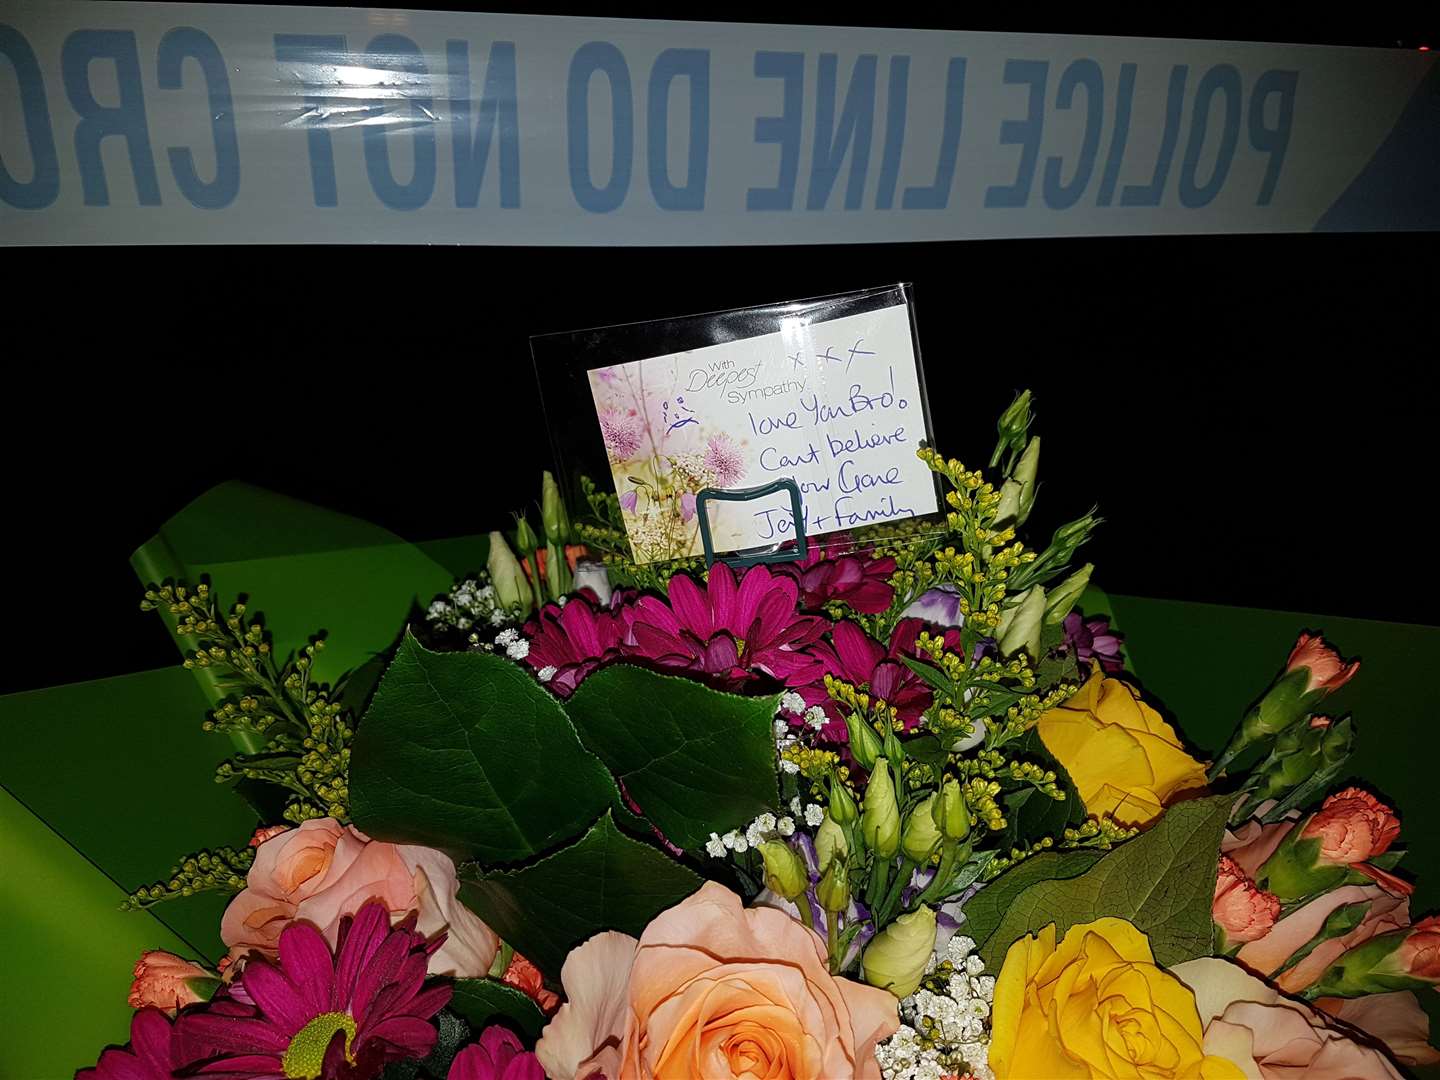 Flowers left at the scene of Luke's death